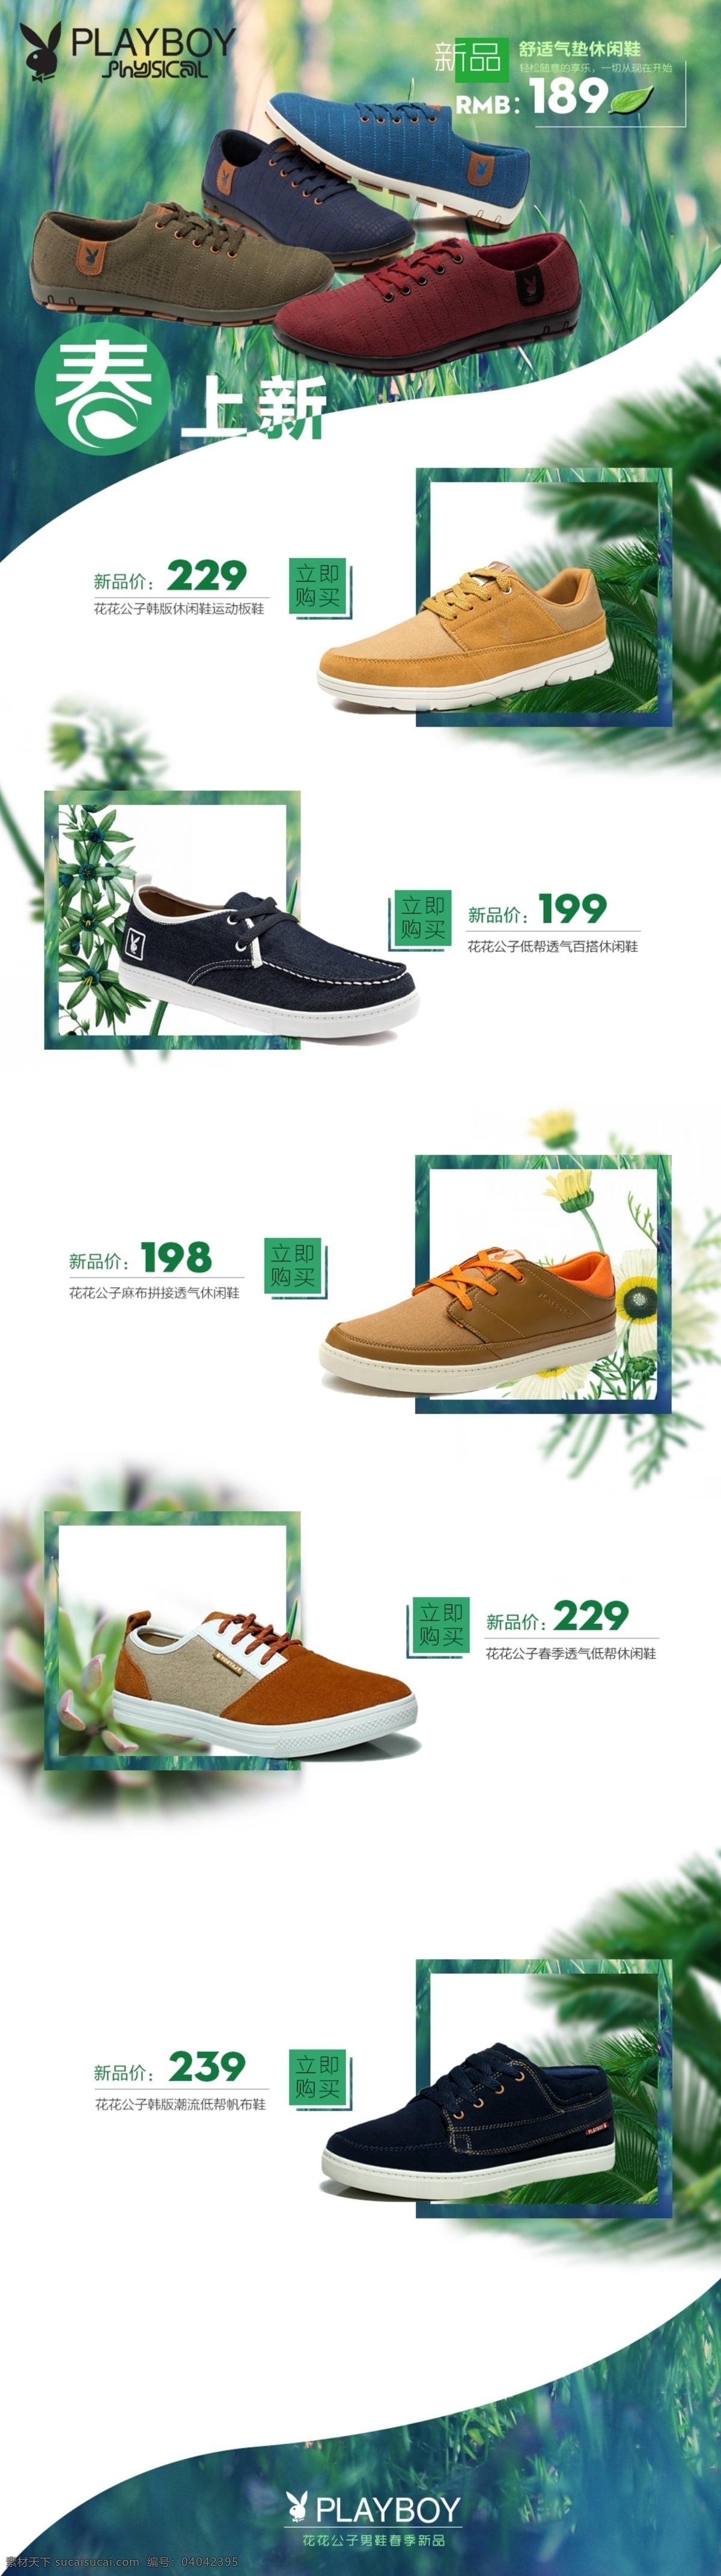 男鞋 春季 活动 版面 简单排版 绿色植物 休闲鞋 原创设计 原创淘宝设计